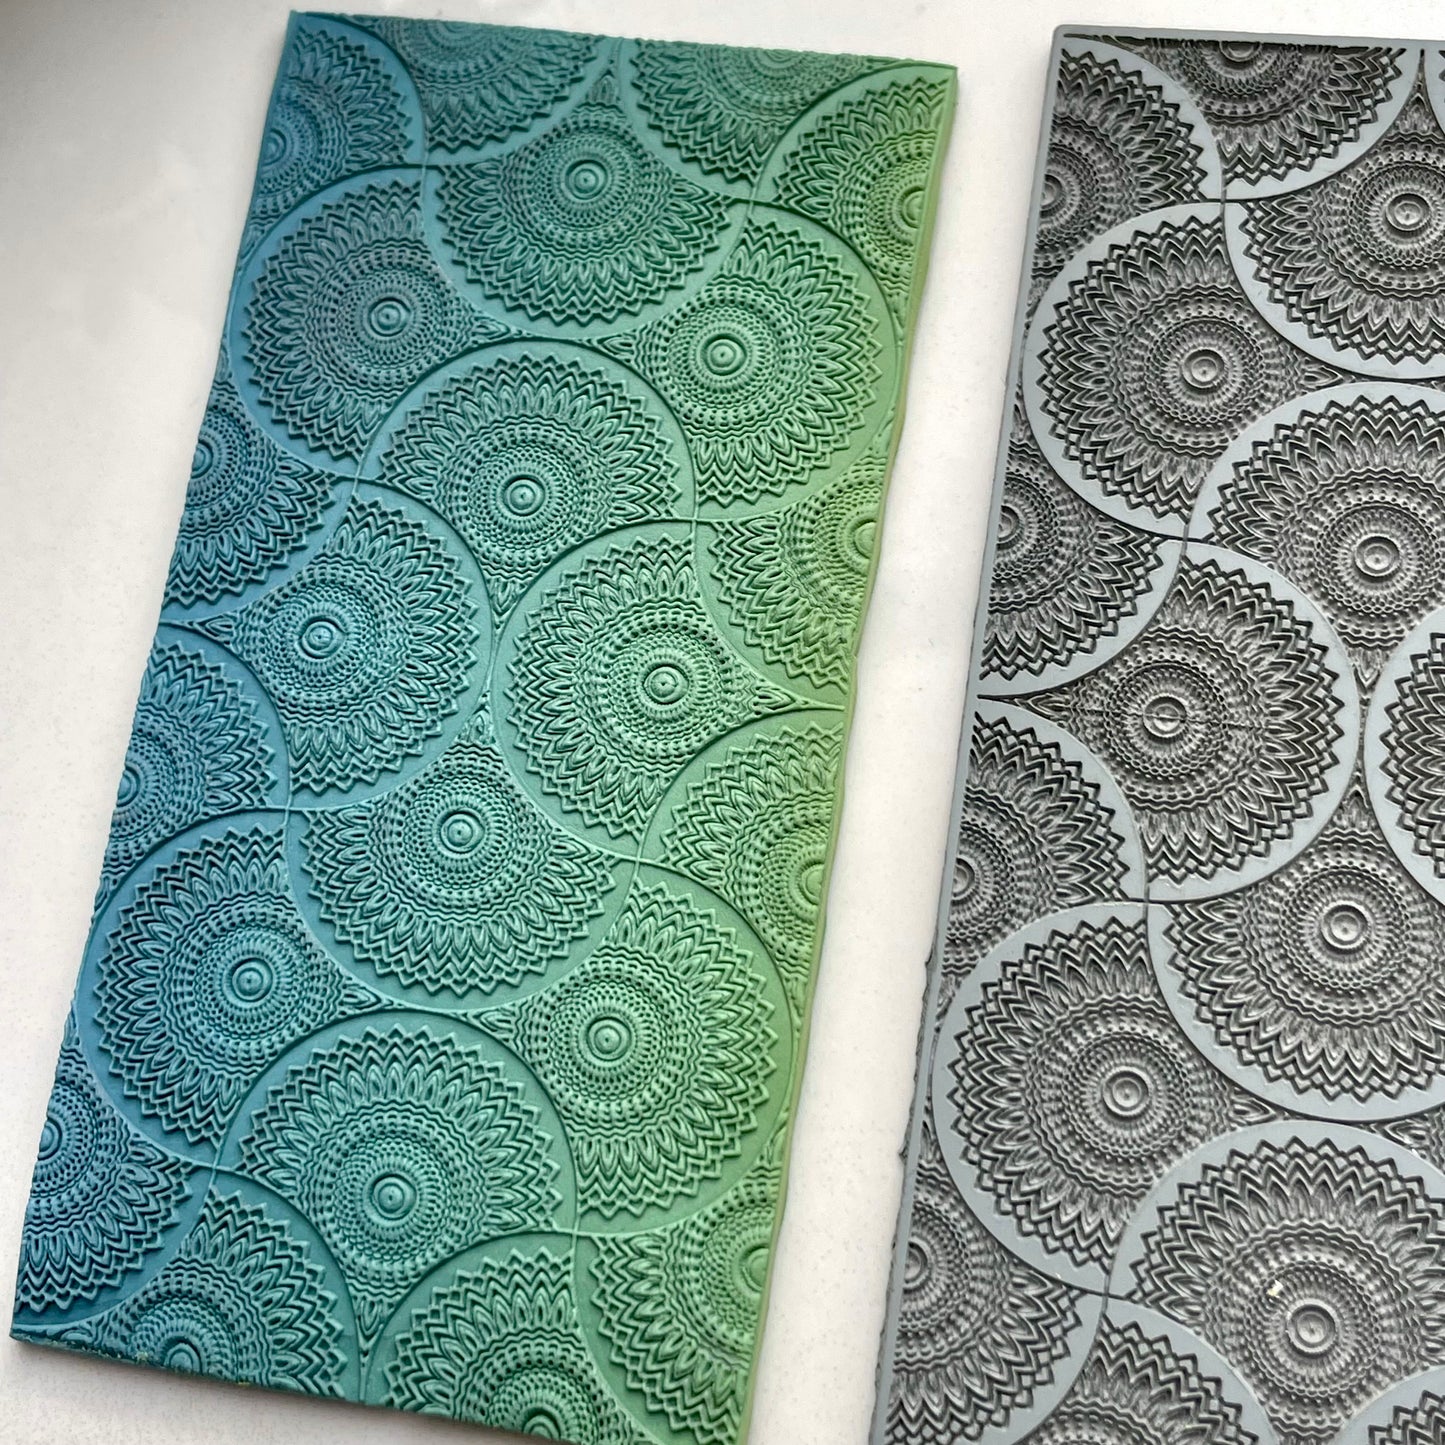 Mandala pattern #1 texture mat